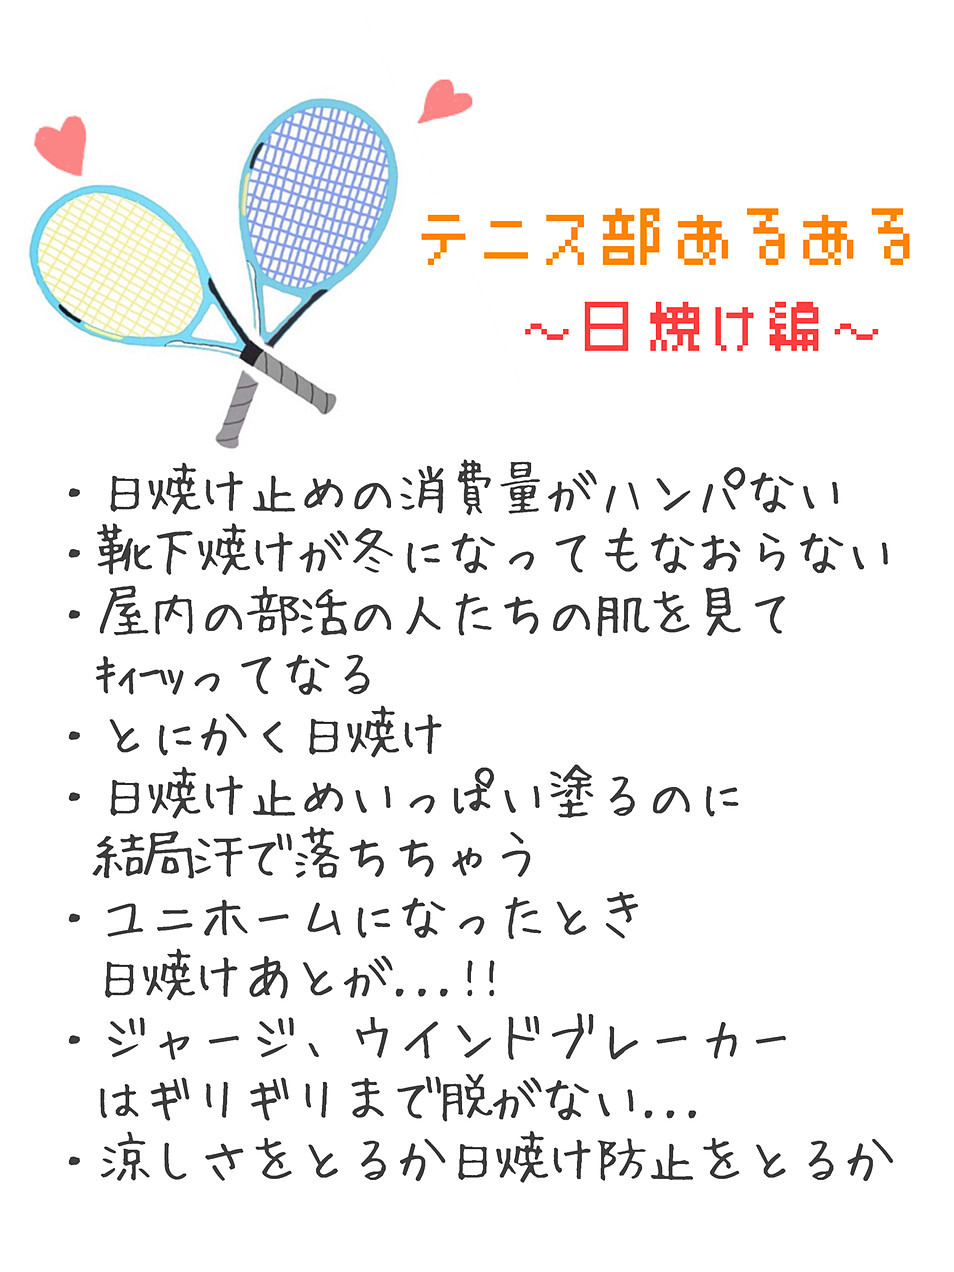 完了しました テニス 女の子 イラスト 5995 テニス 女の子 イラスト かわいい Blogejokiyorolas